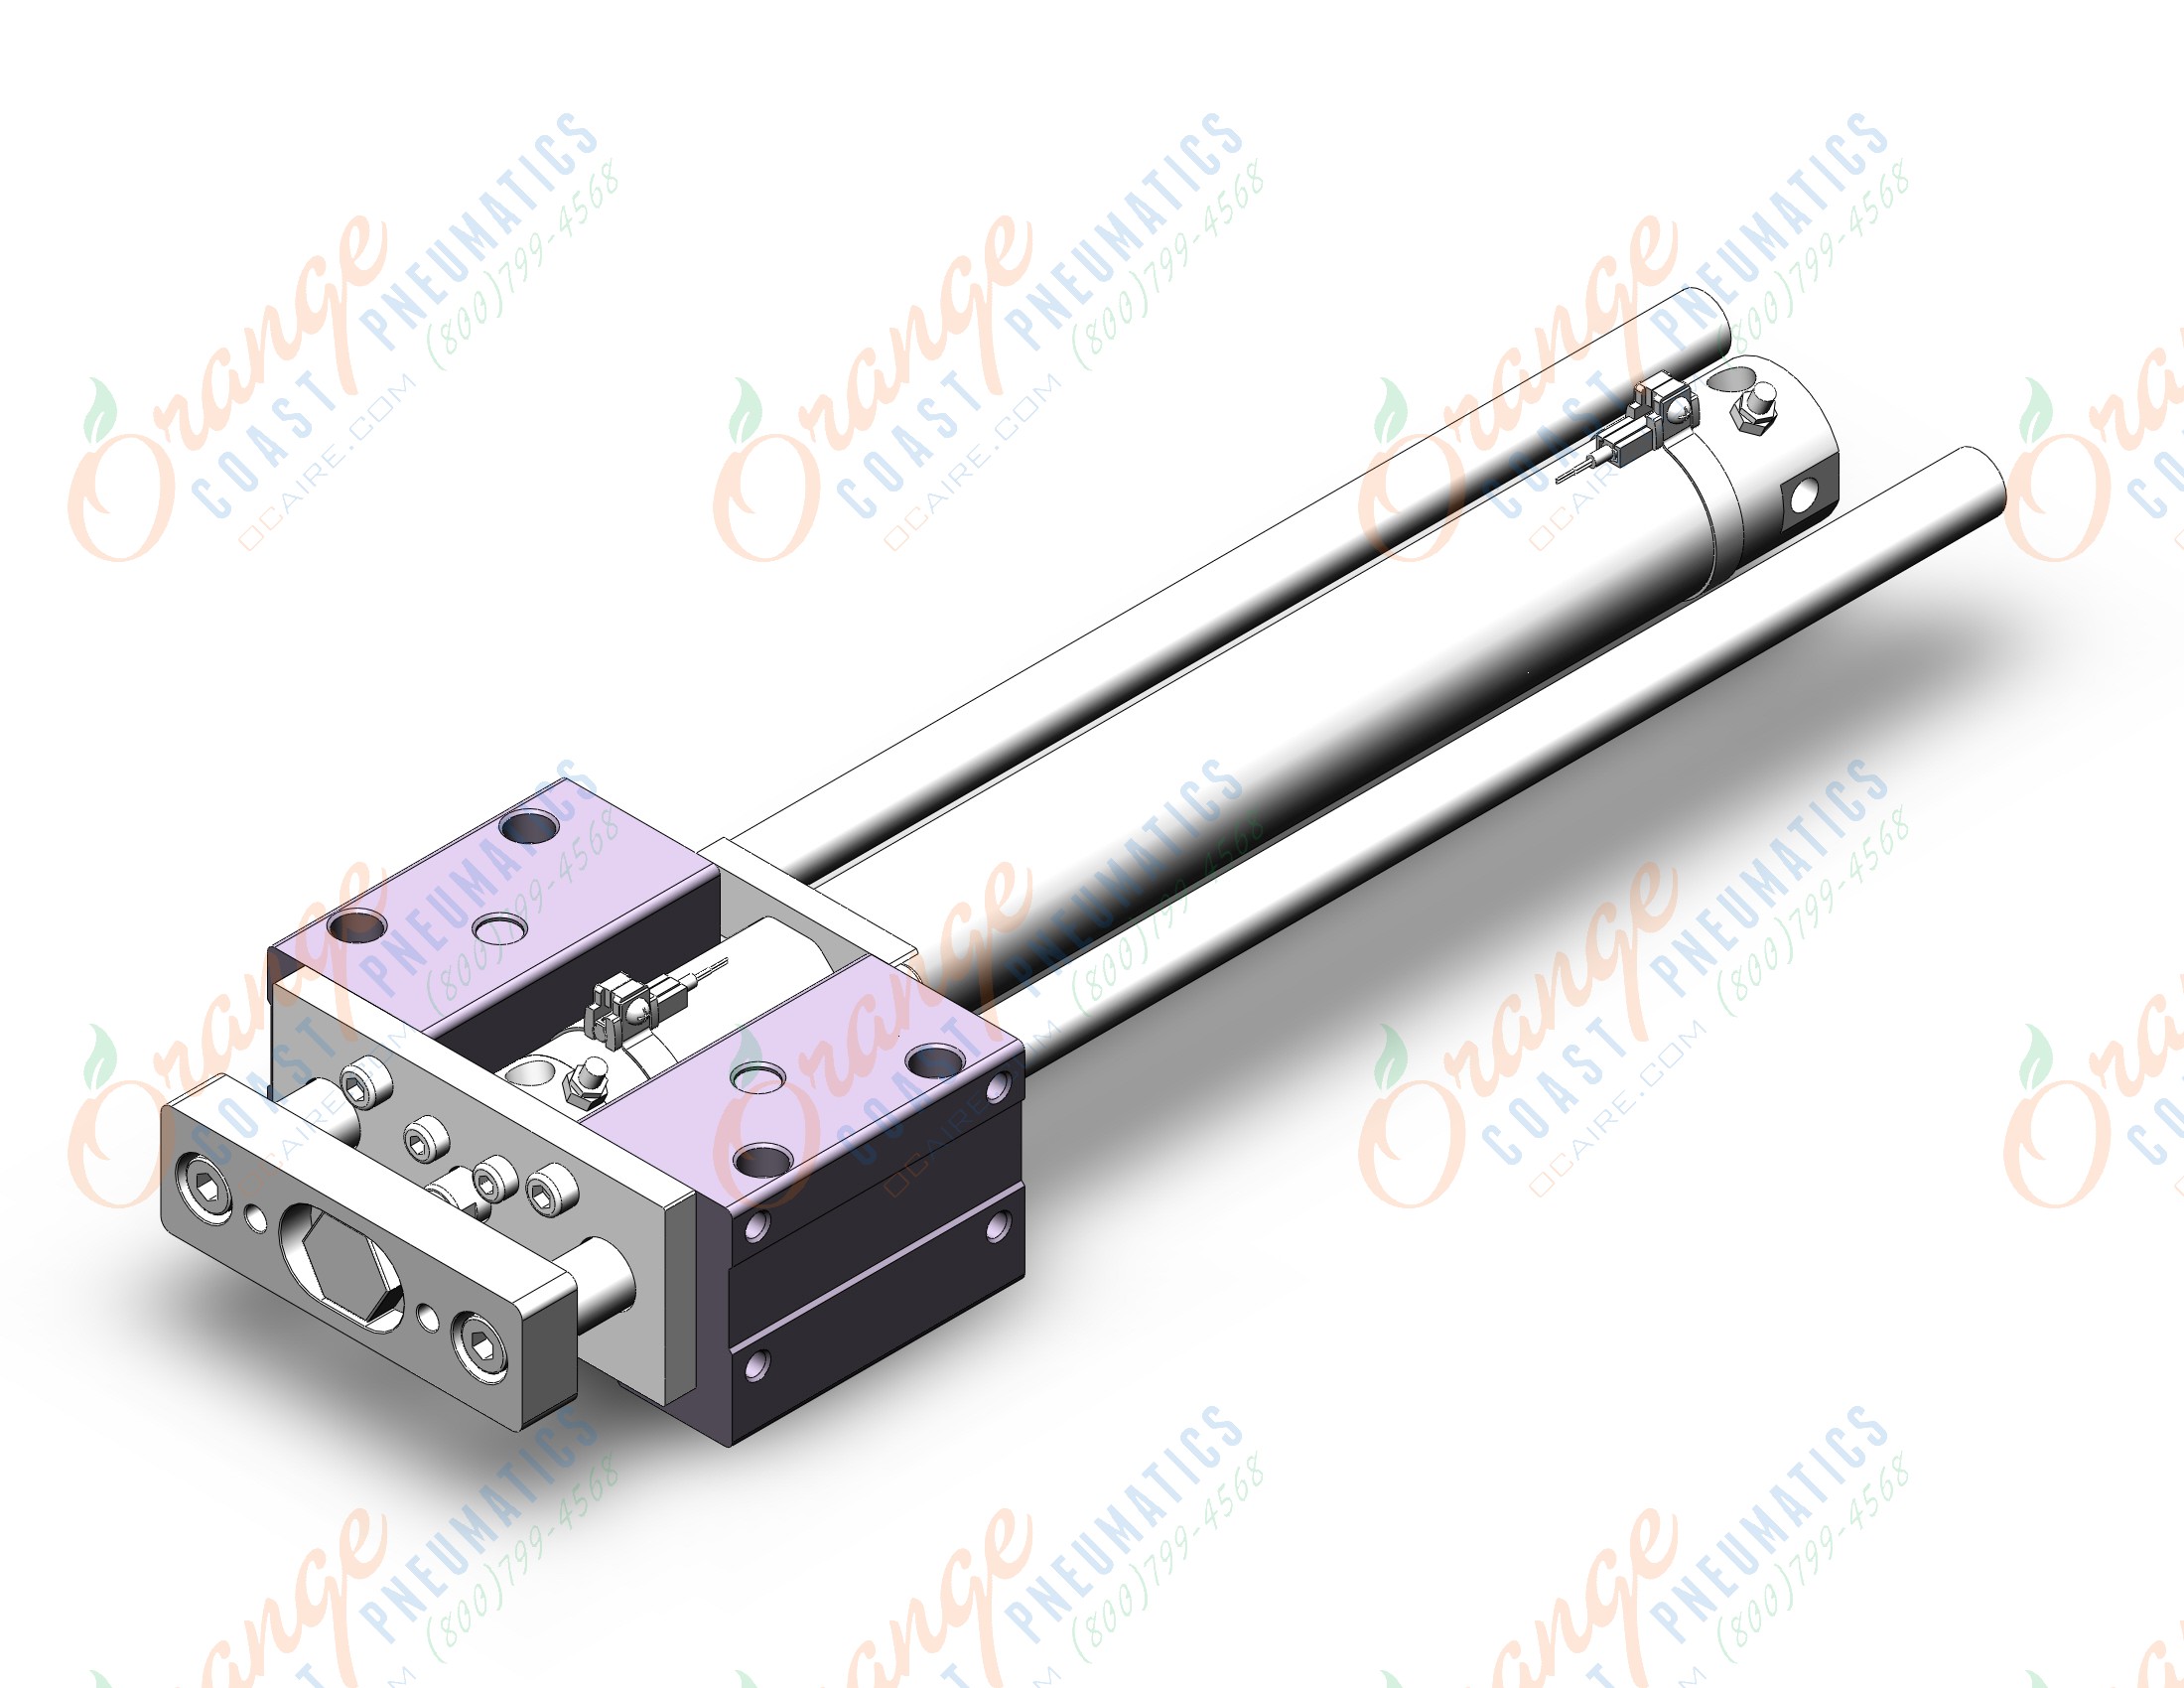 SMC MGCMB32TN-300-M9BWSAPC 32mm mgcl/mgcm slide bearing, MGCL/MGCM GUIDED CYLINDER